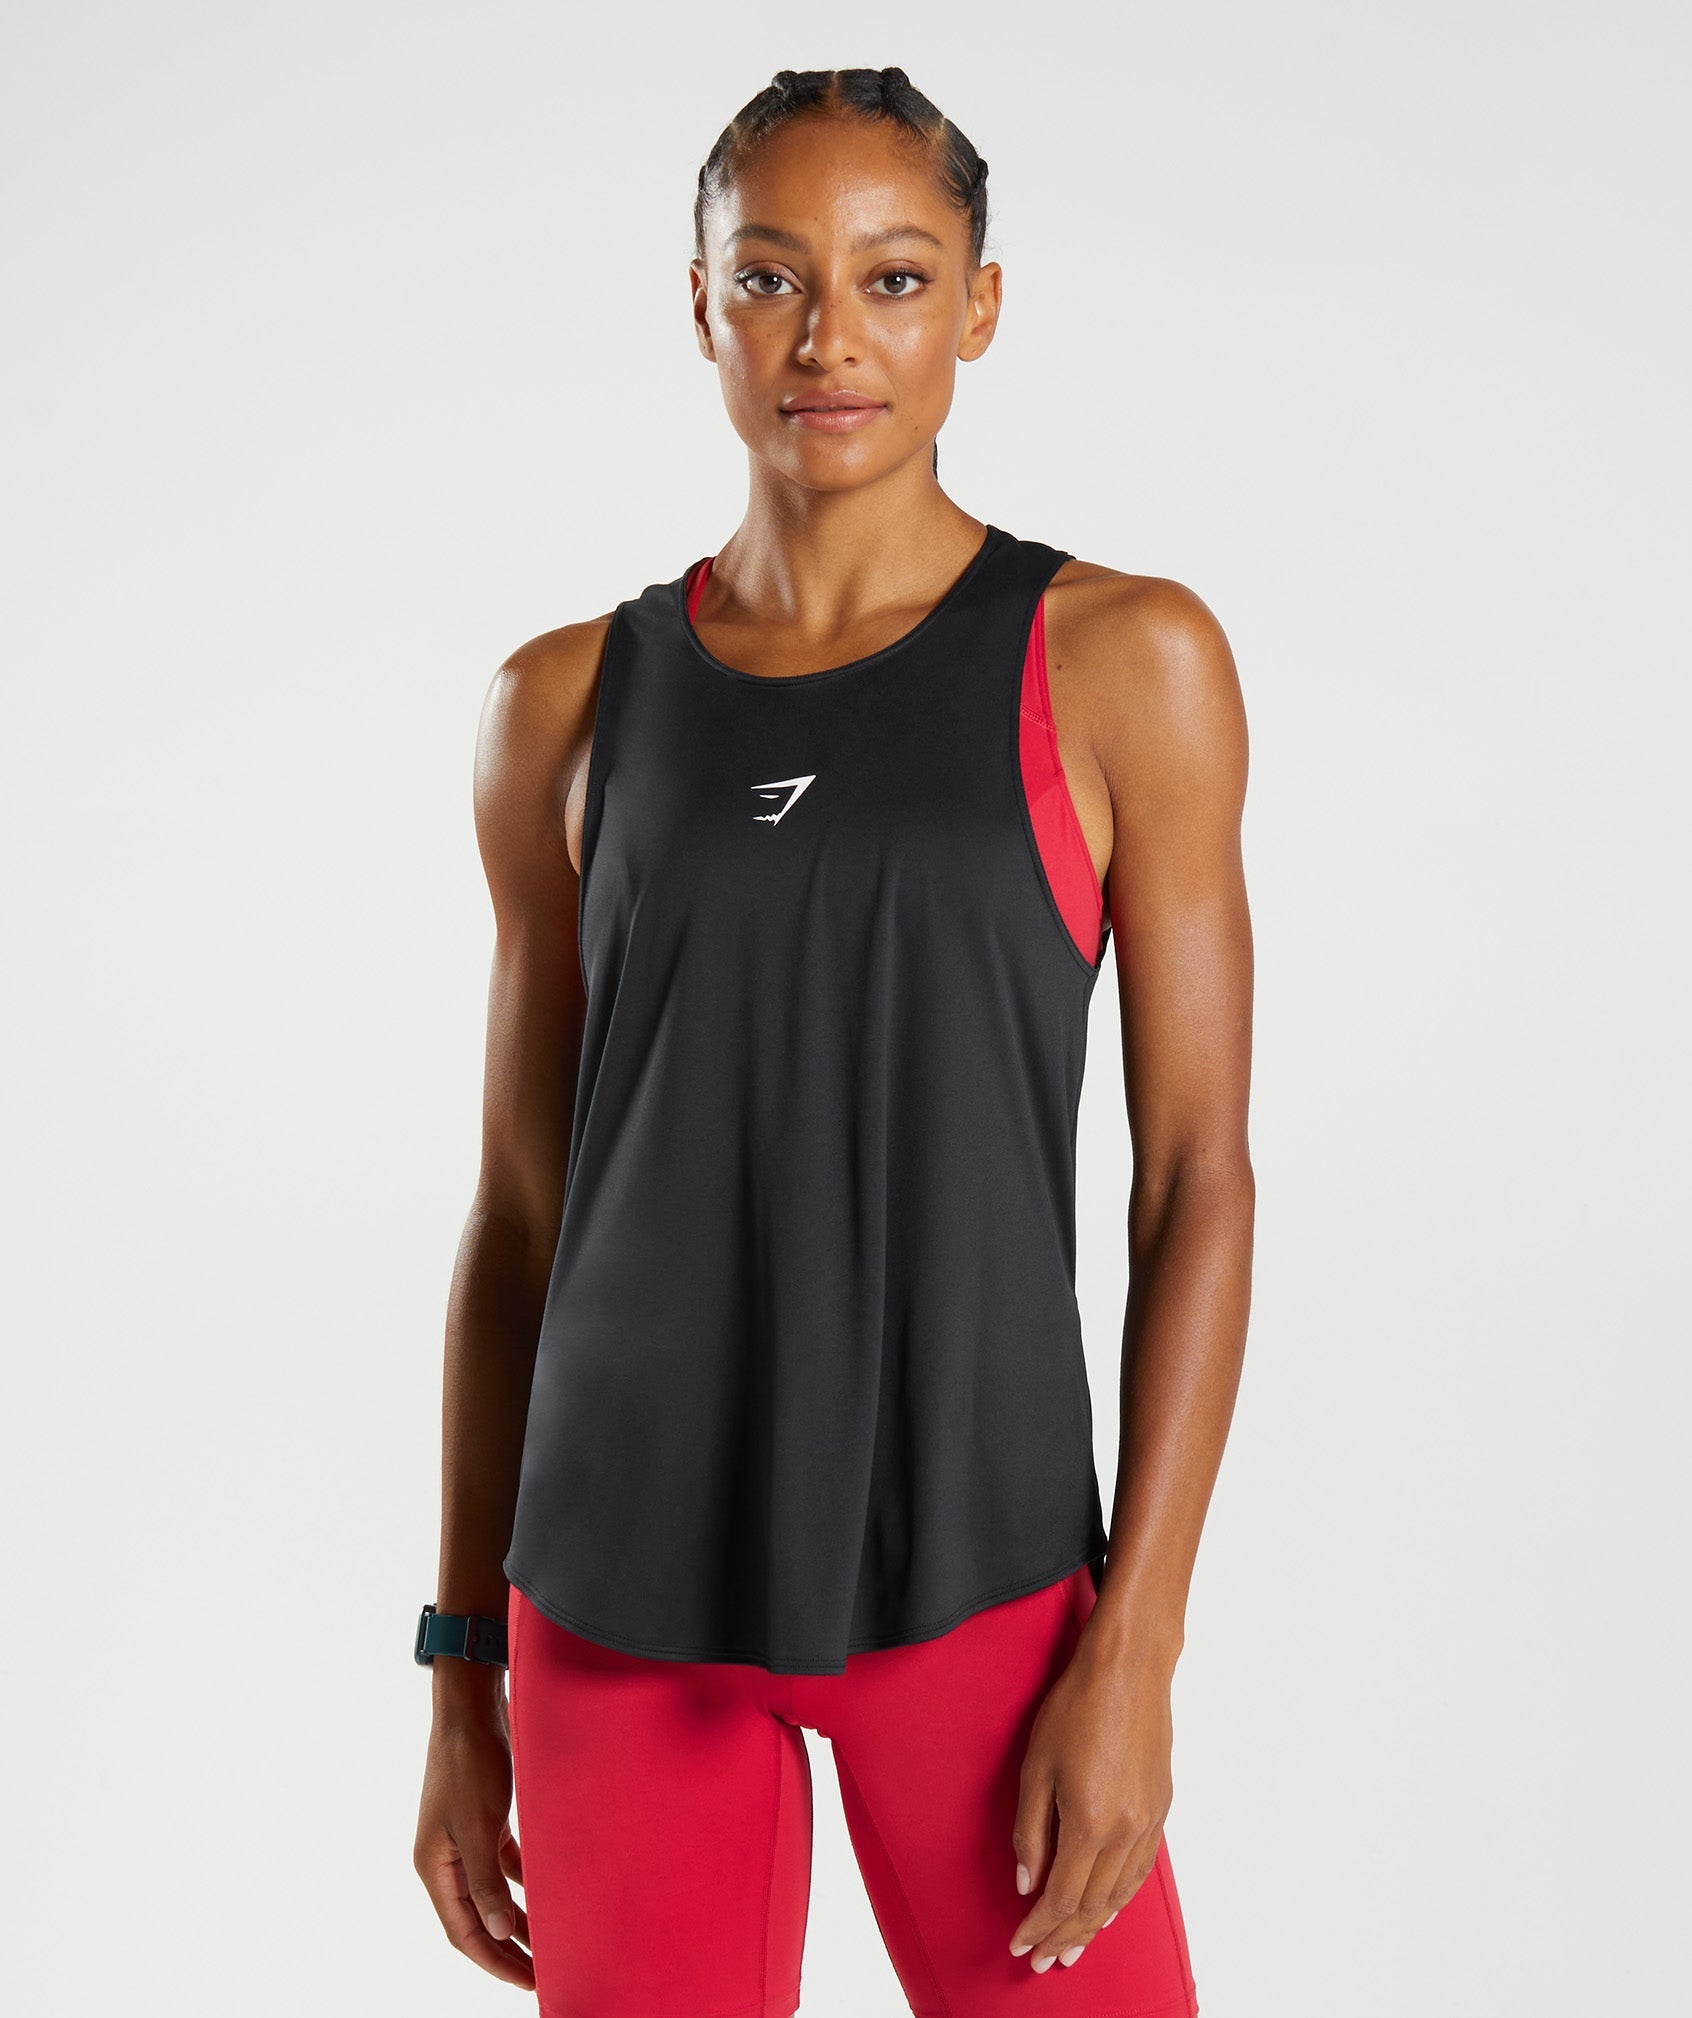 Women's Running Tank Tops & Vests - Gymshark